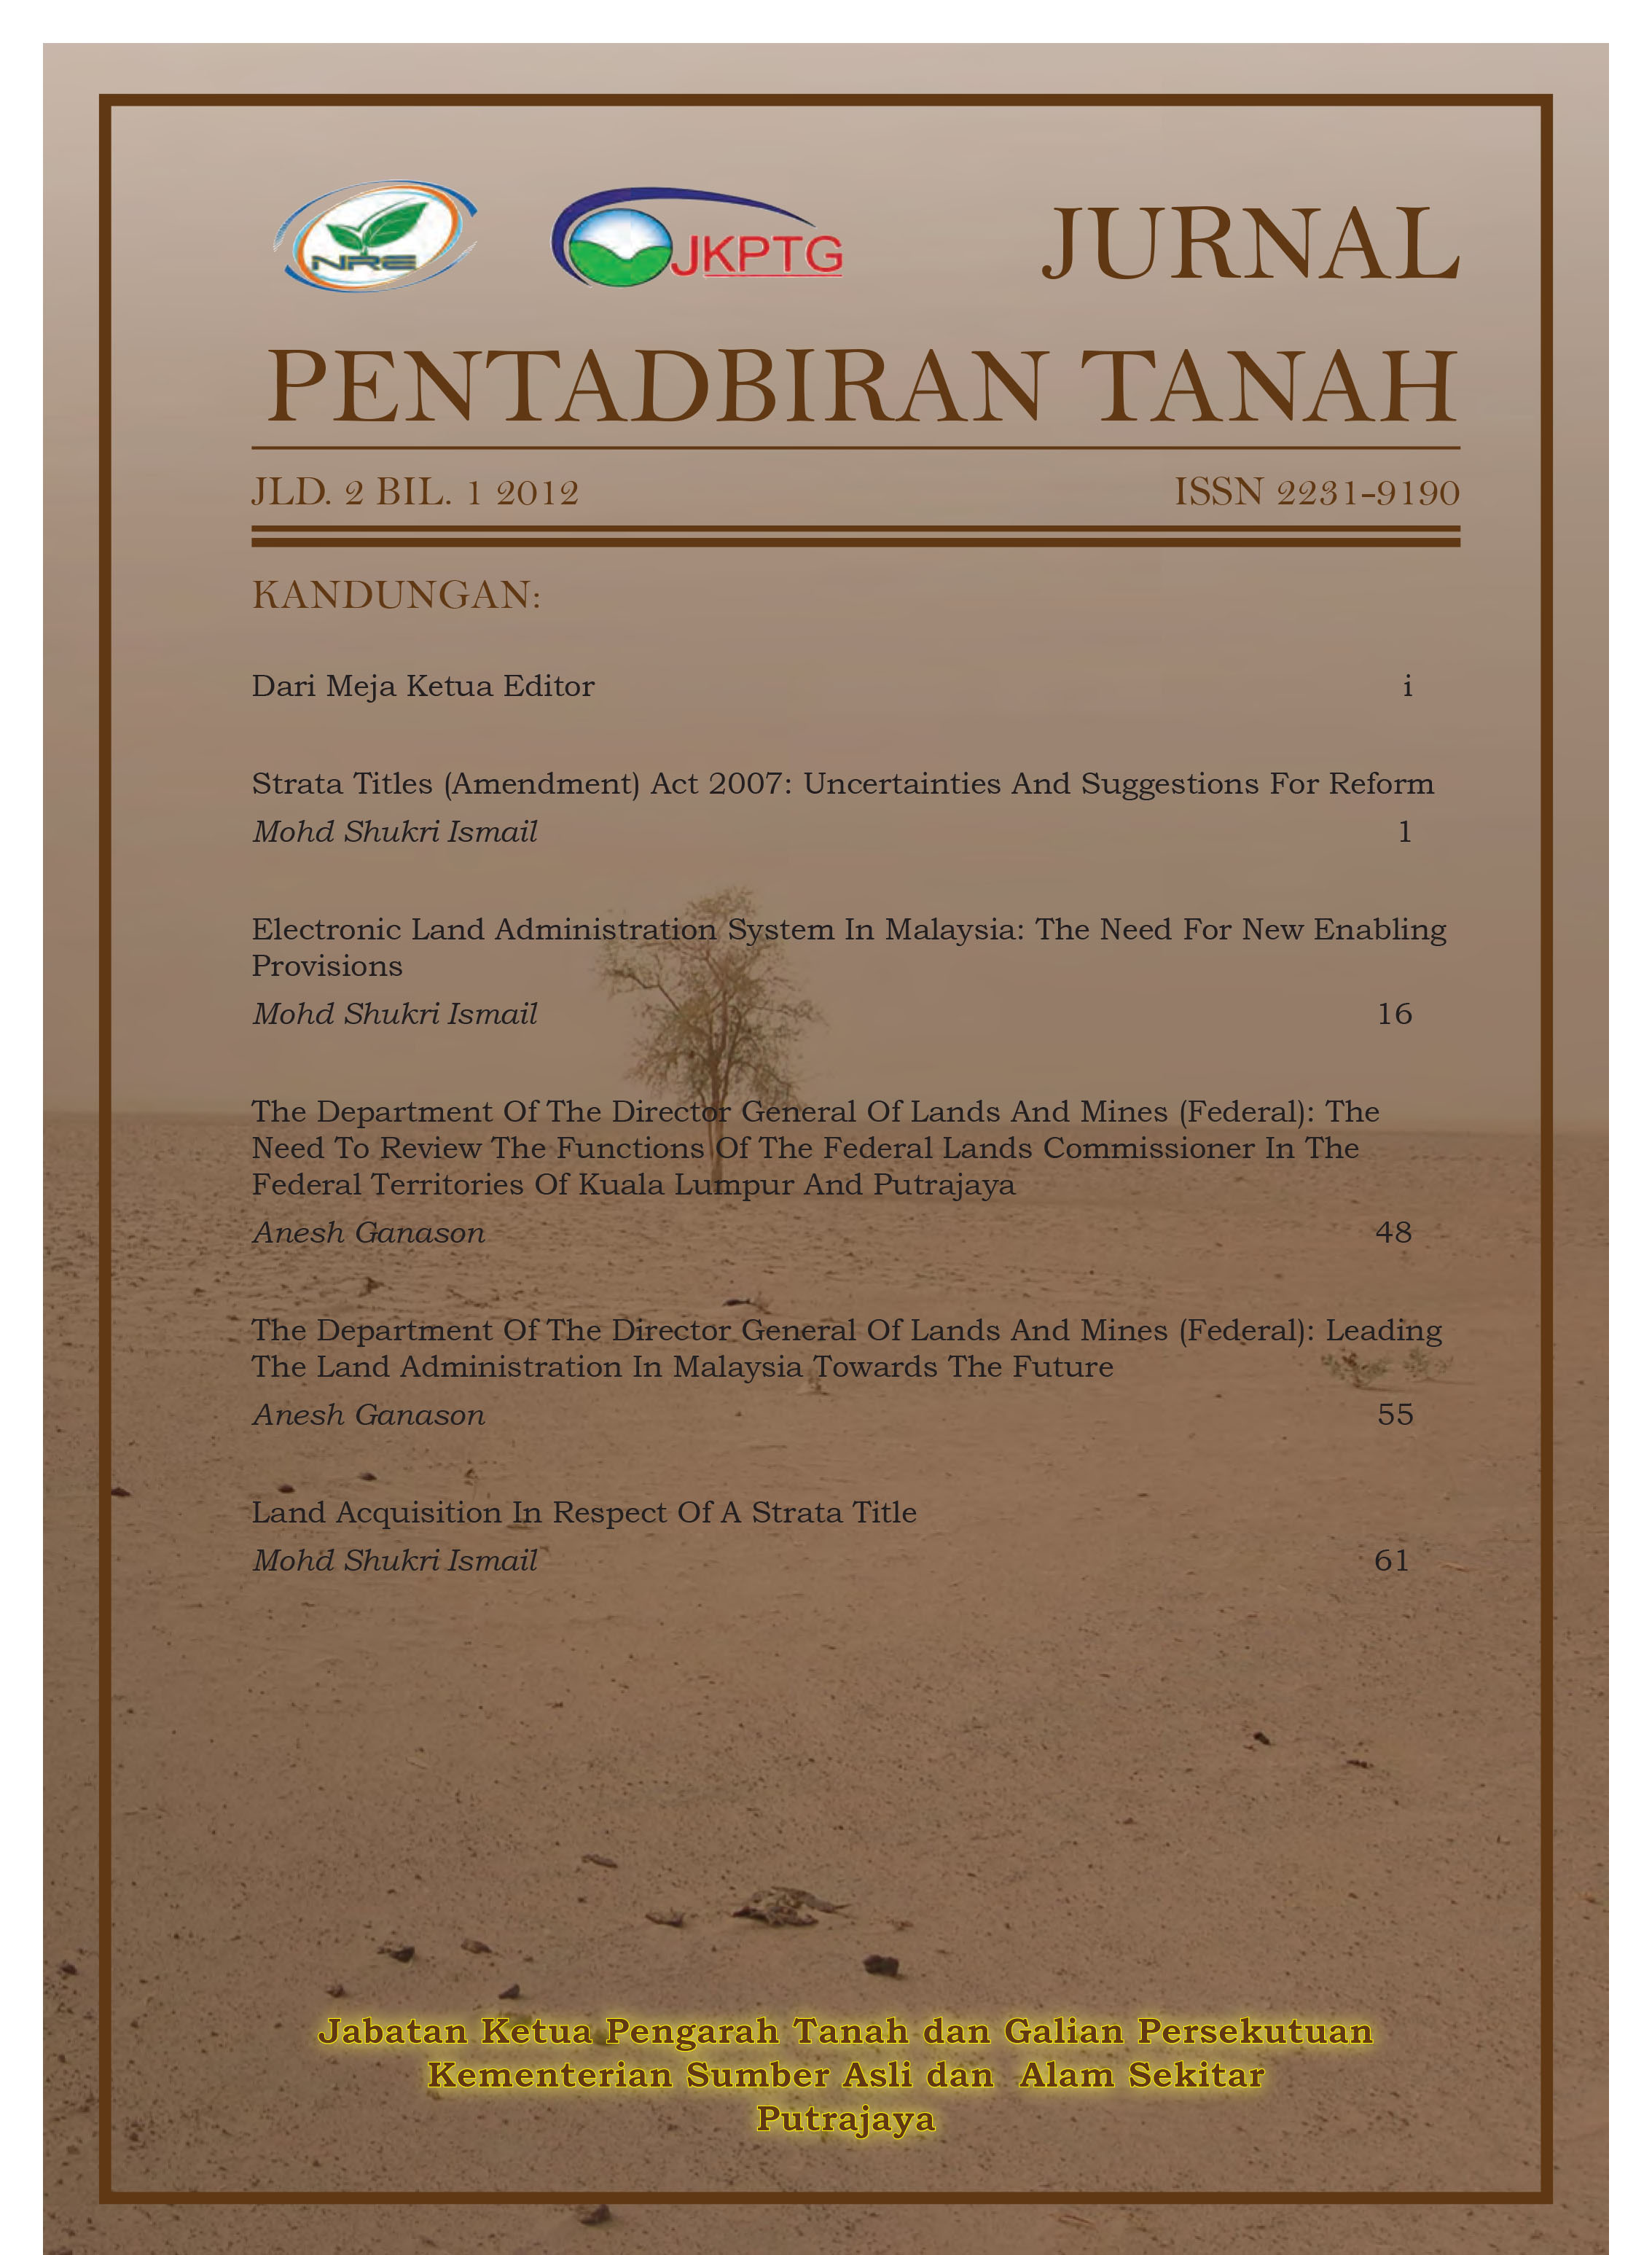 Cover Jurnal Pentadbiran Tanah JKPTG 1 95x134